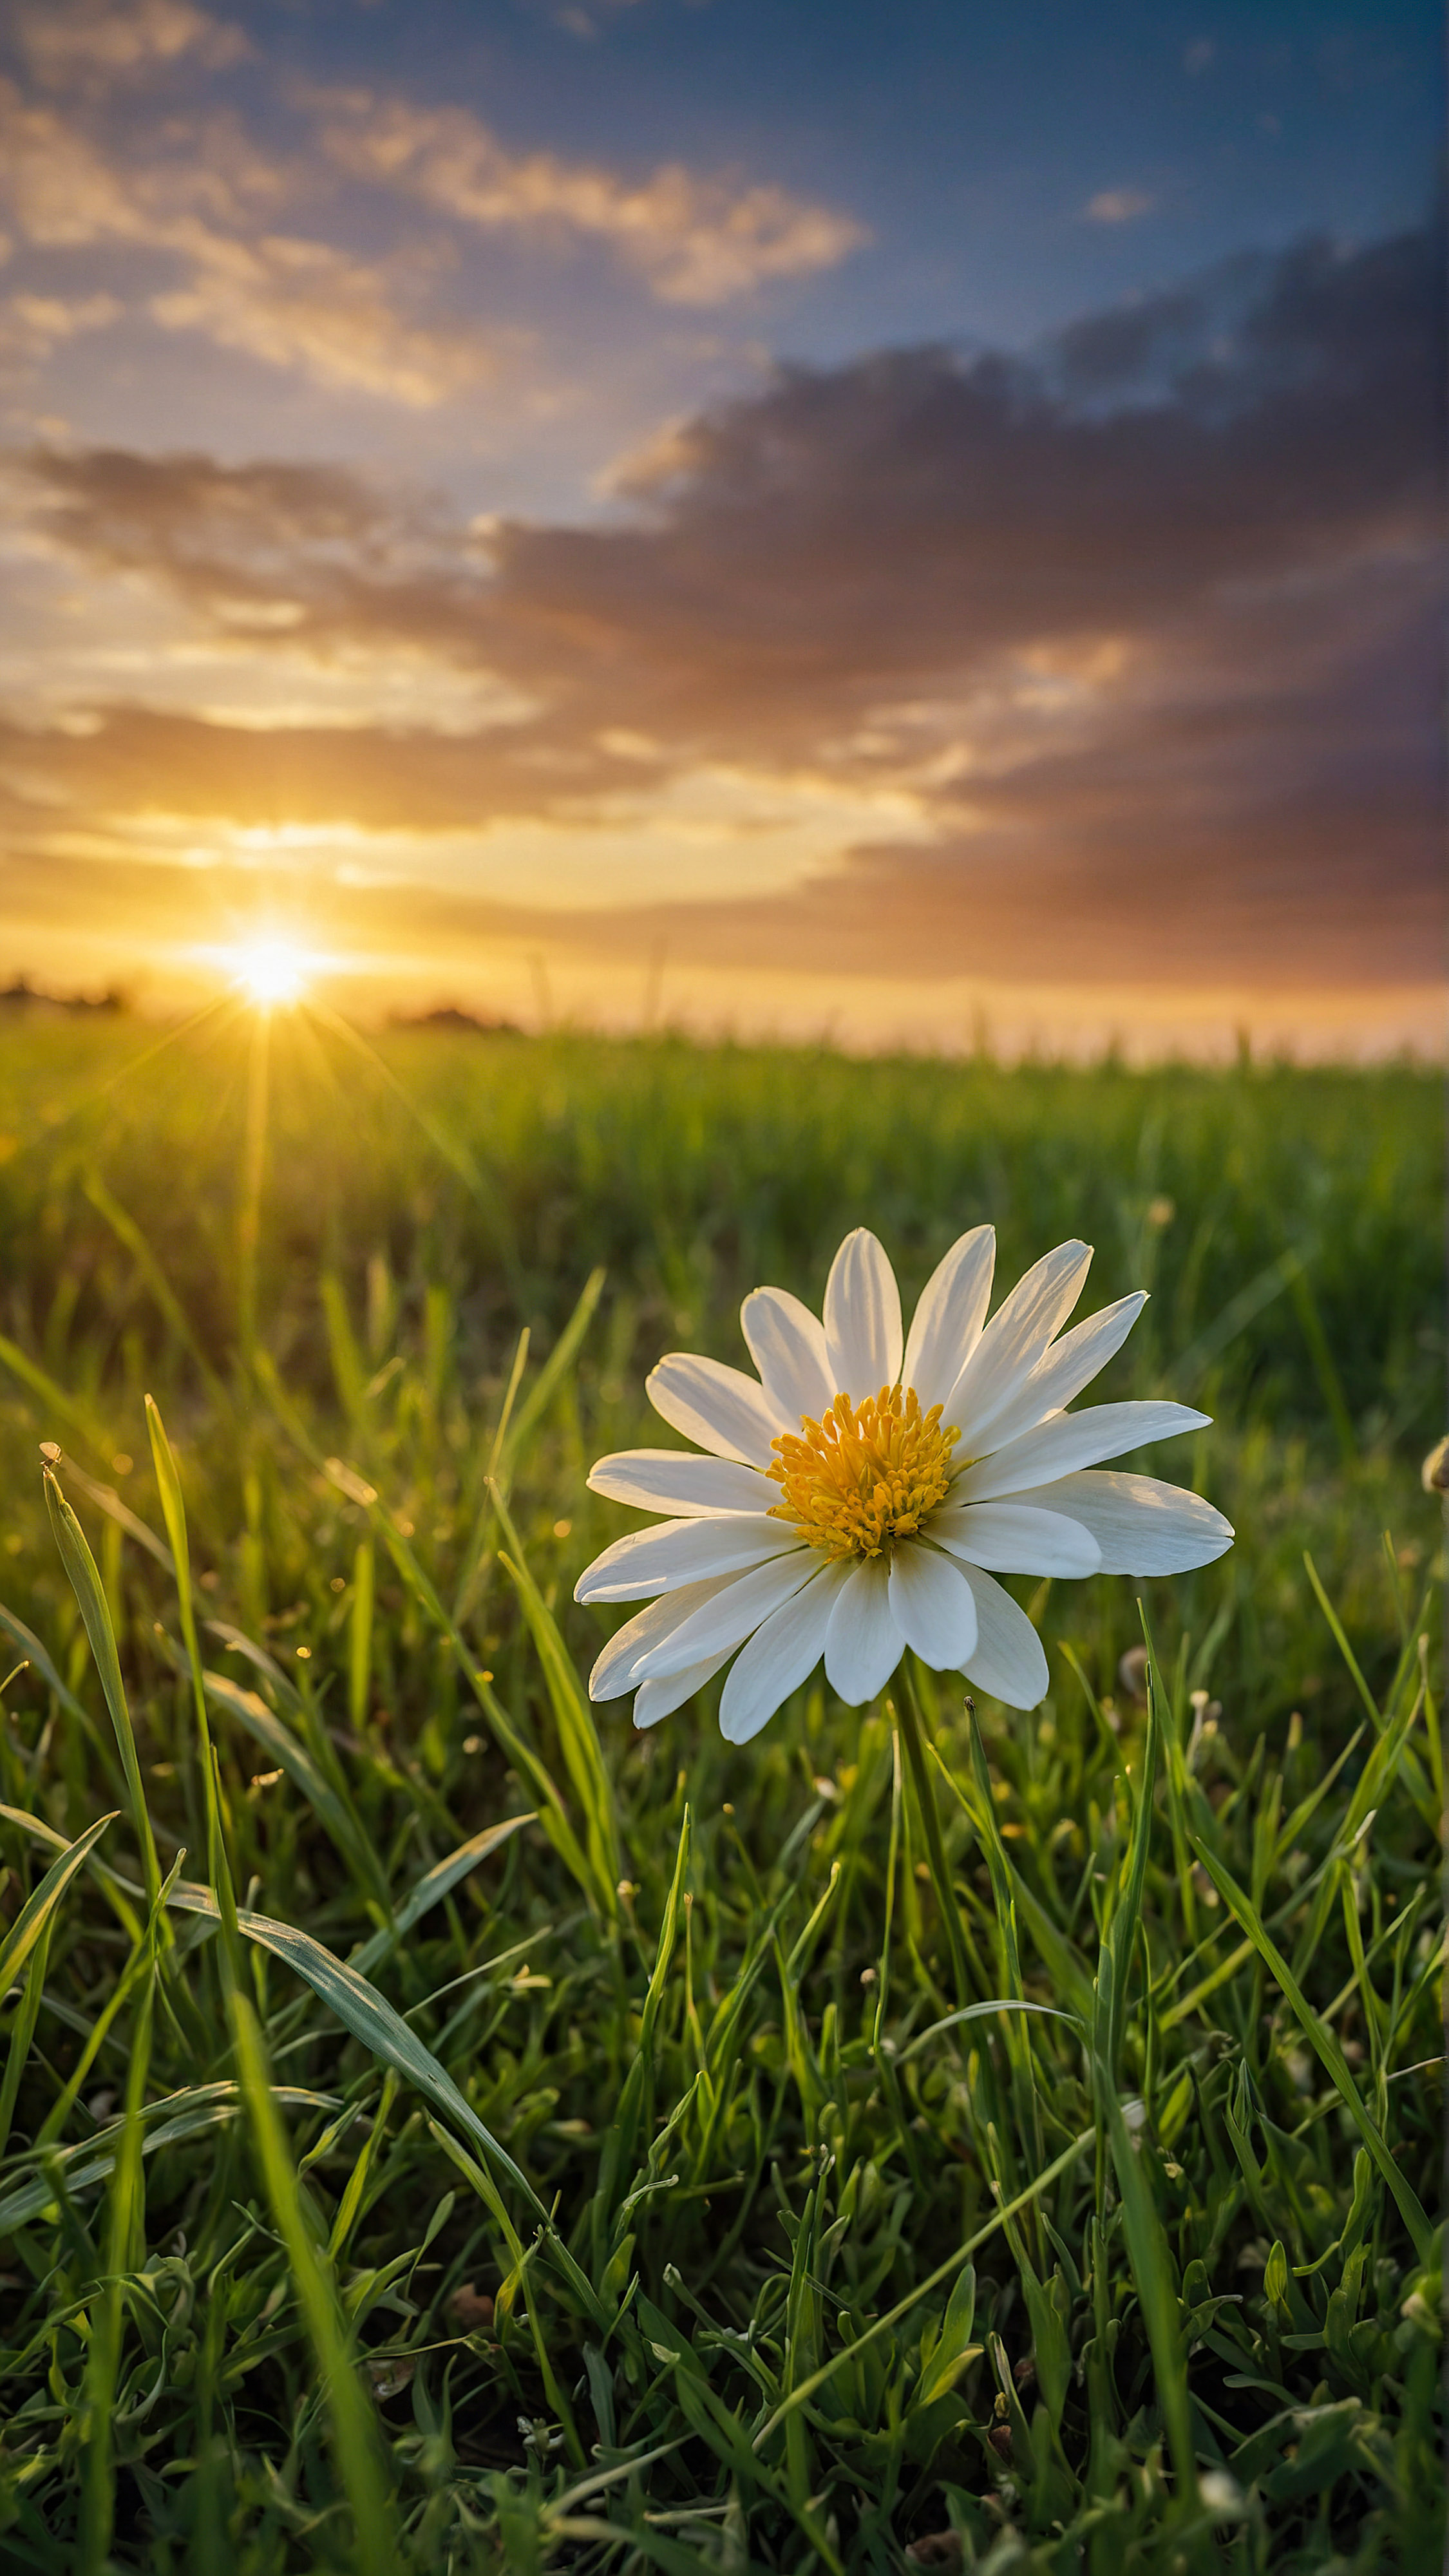 Capturez l'essence de la beauté naturelle avec notre arrière-plan iPhone mignon, présentant une seule fleur blanche avec des étamines jaunes fleurissant au milieu de l'herbe verte, sur un fond d'un coucher de soleil vibrant.